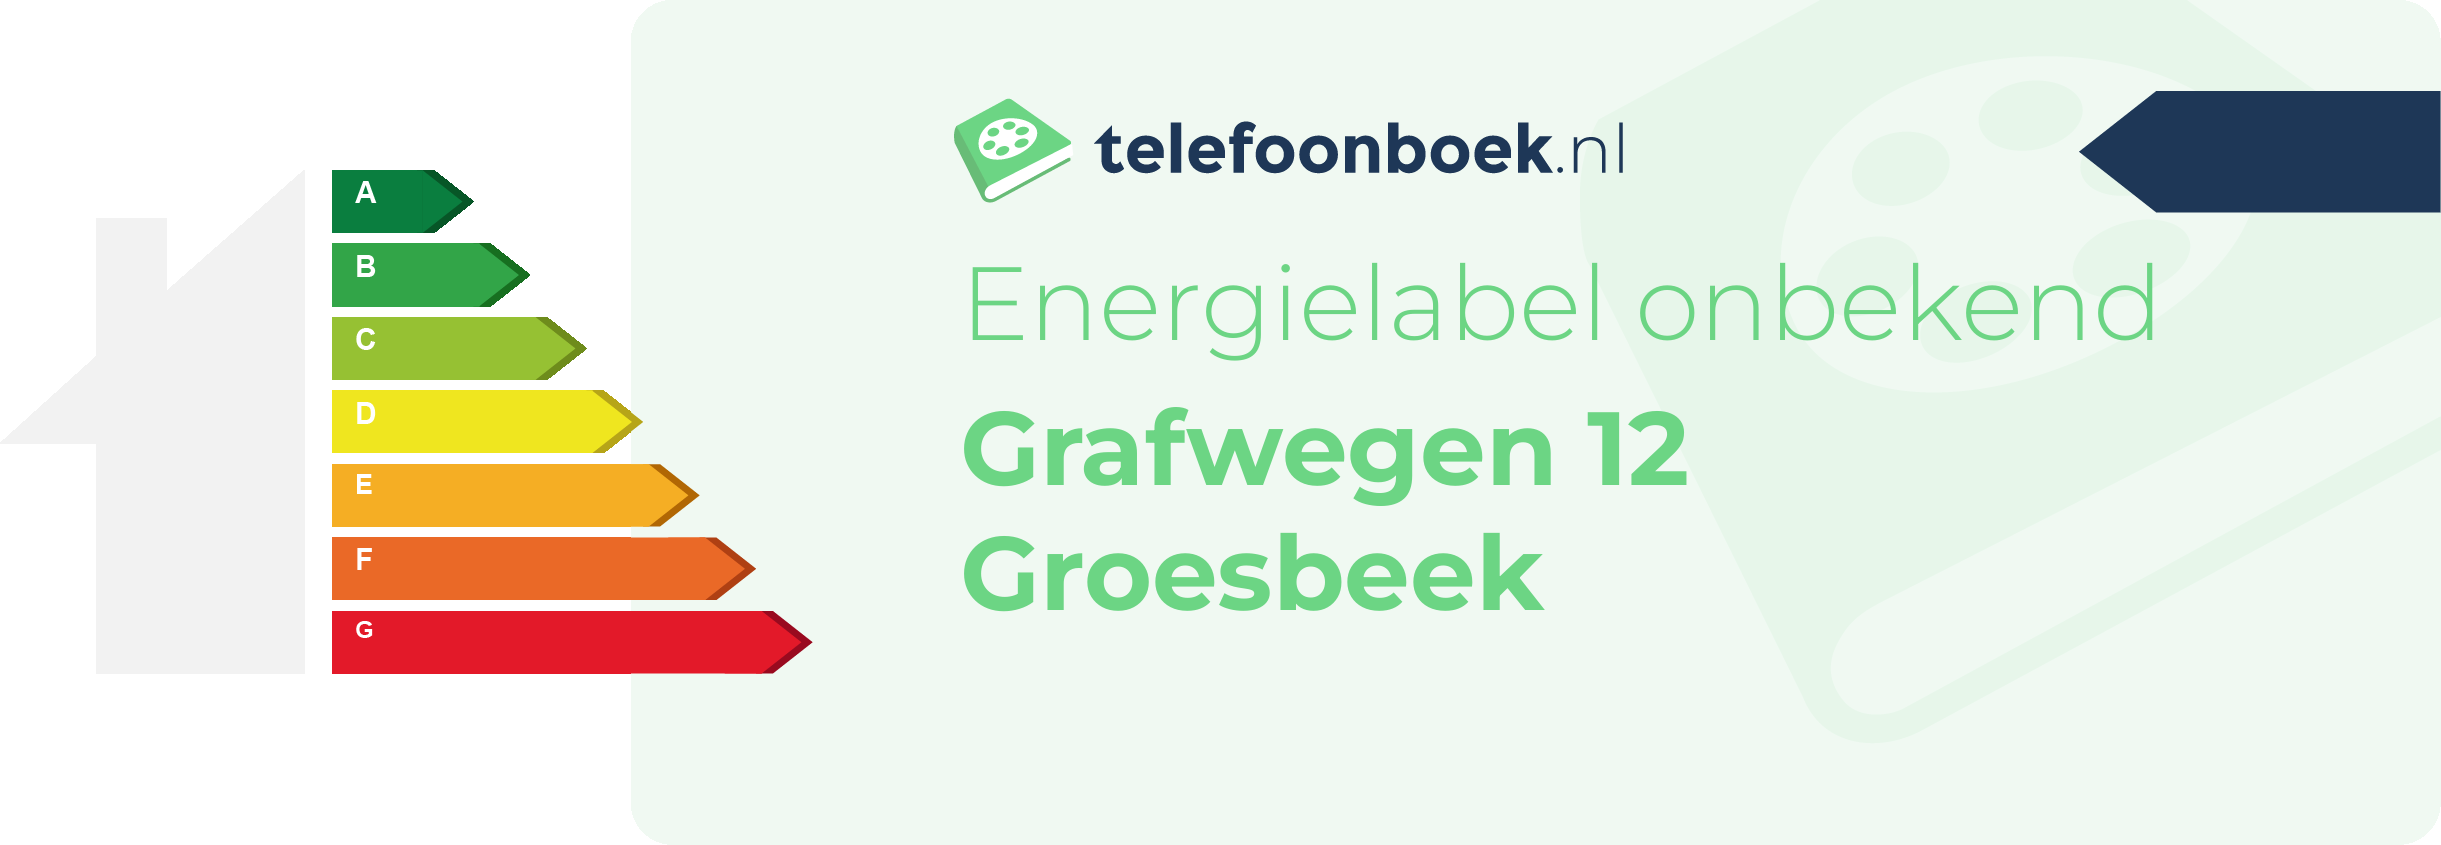 Energielabel Grafwegen 12 Groesbeek